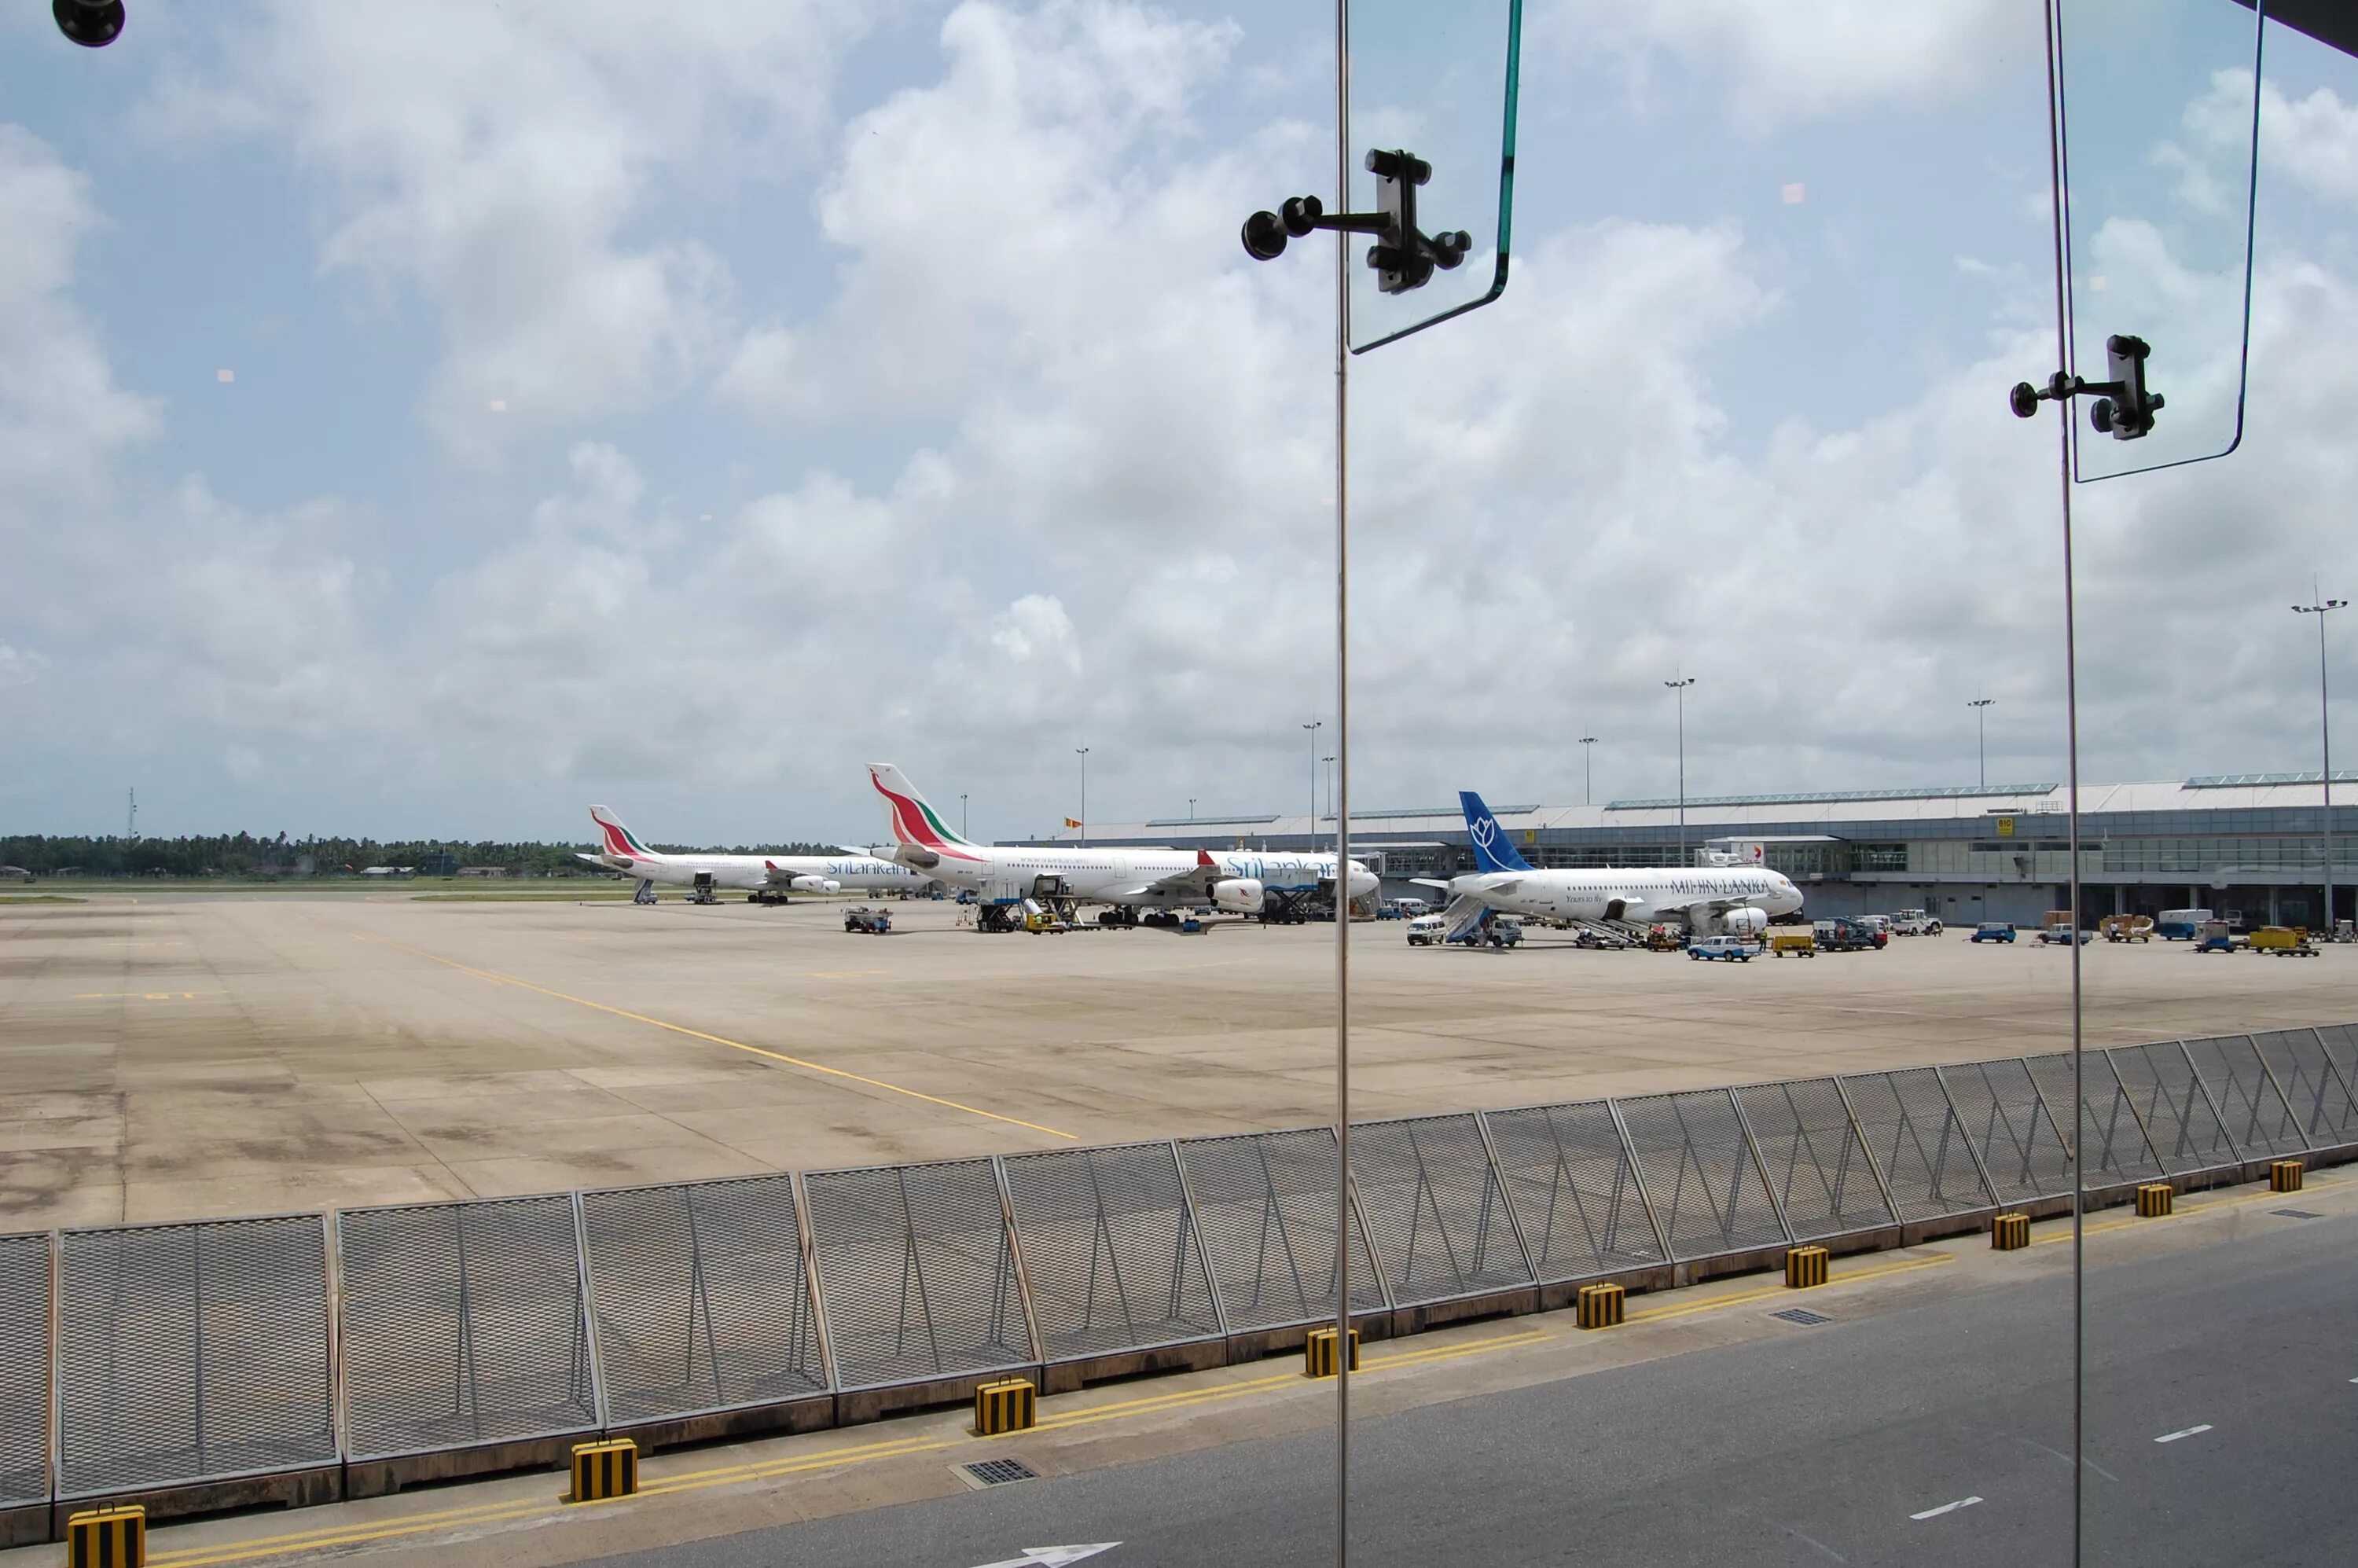 Международный аэропорт Бандаранаике. Аэропорт Коломбо Шри Ланка. Аэропорт Шри Ланка Международный. Шри Ланка аэропорт Бандаранайке. Шри ланка аэропорт вылет